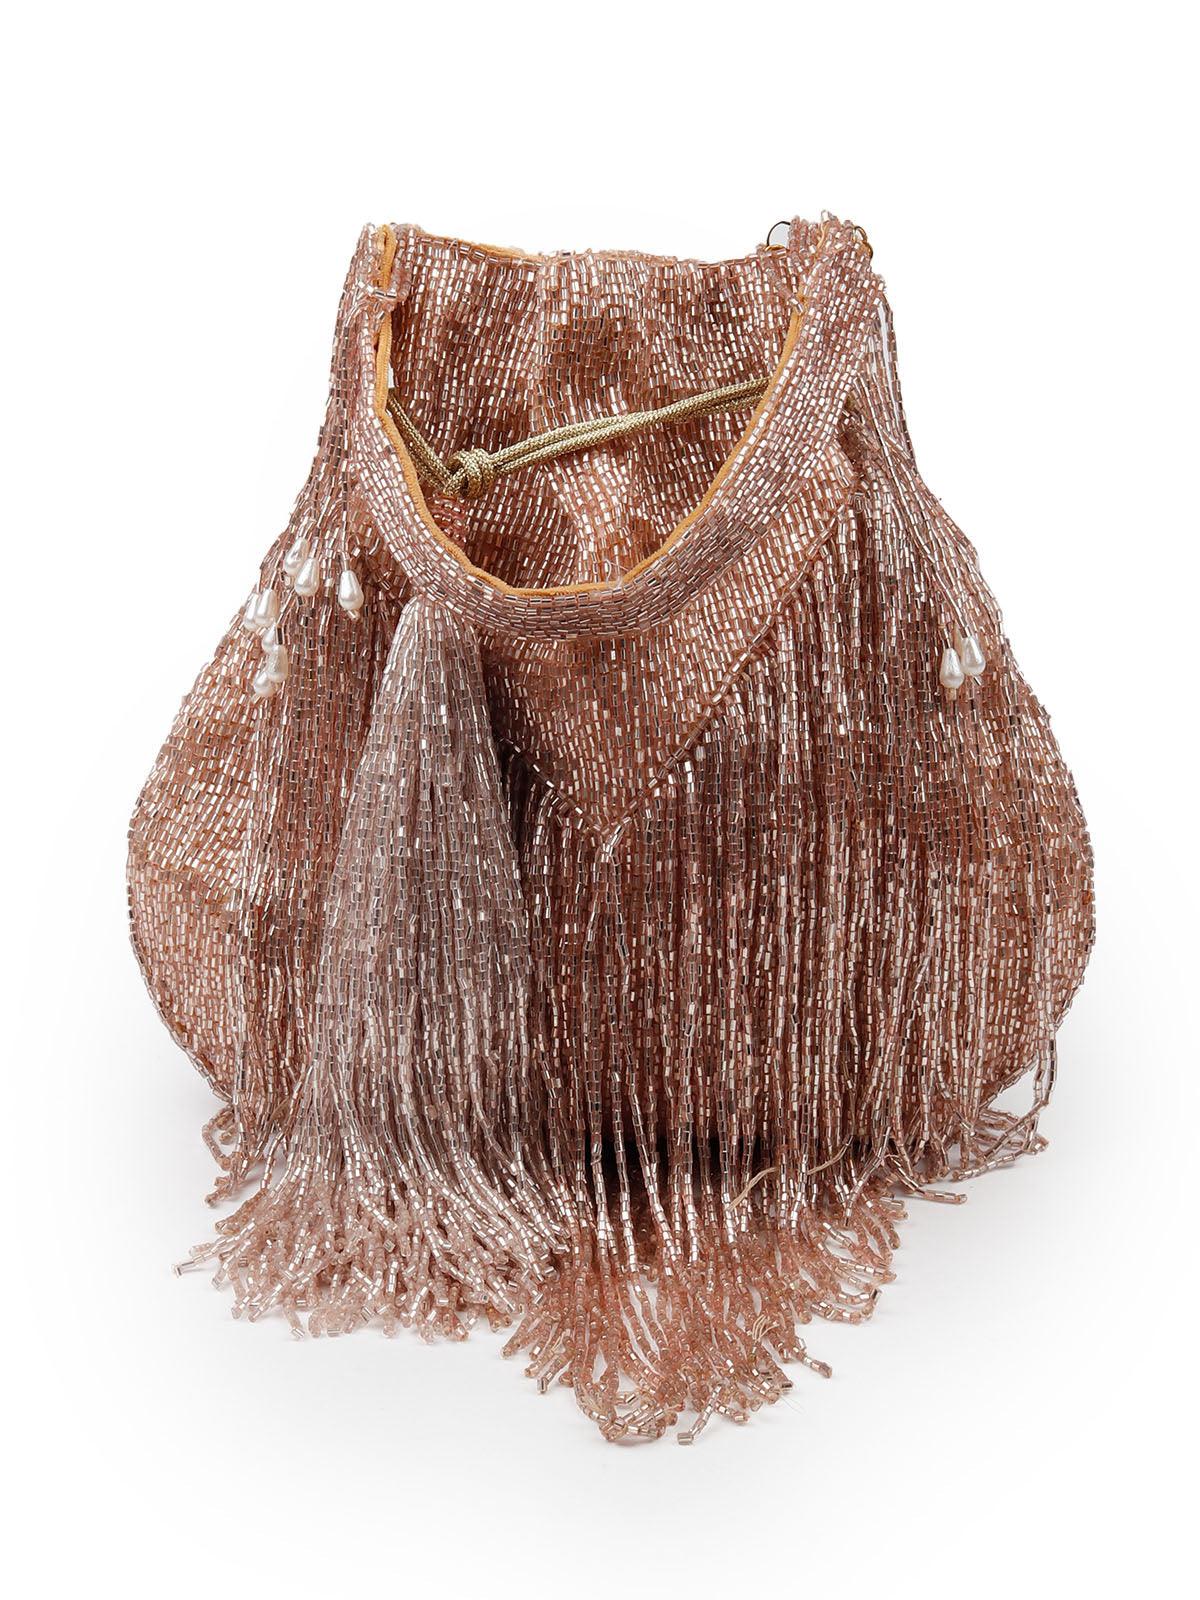 Stunning rose gold fringes beaded Potli  bag for women - Odette